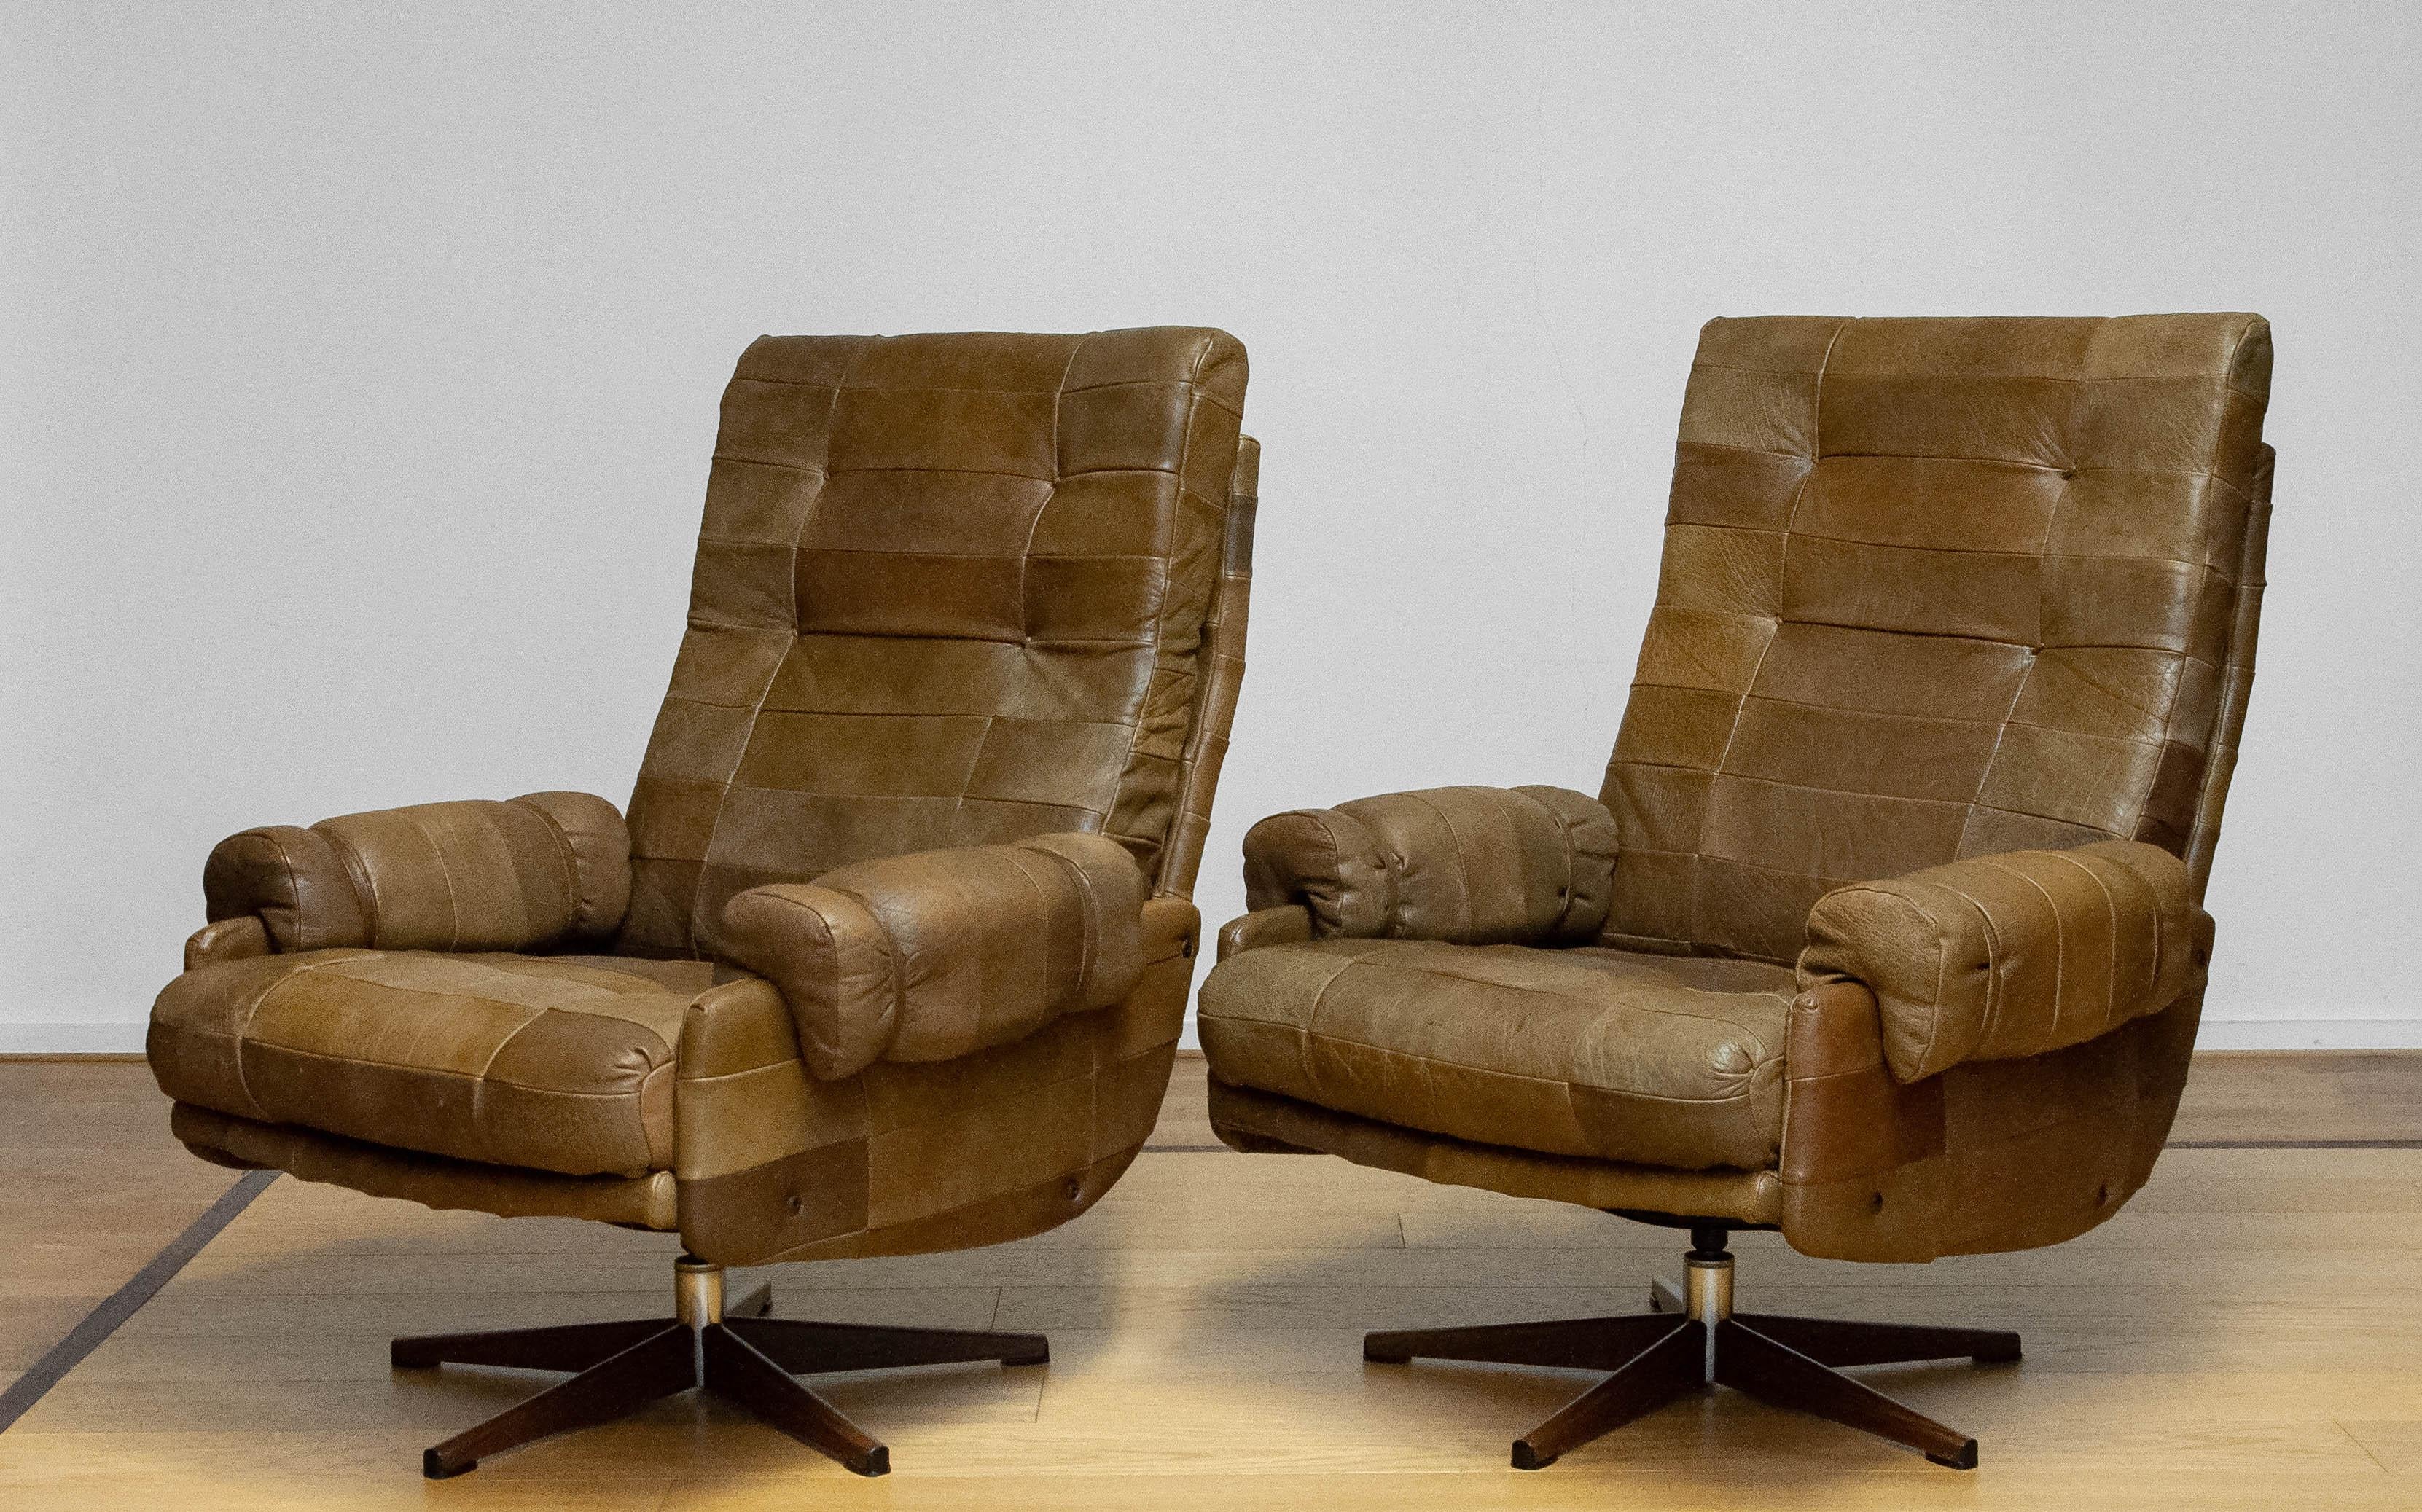 Äußerst bequemes Paar Drehstühle von Arne Norell für Norell Möbler AB in Schweden aus den 1970er Jahren. Die Stühle sind mit schönem und robustem olivgrünem (Patchwork-) Büffelleder bezogen. Die Stühle stützen großartig und sind absolut geeignet für